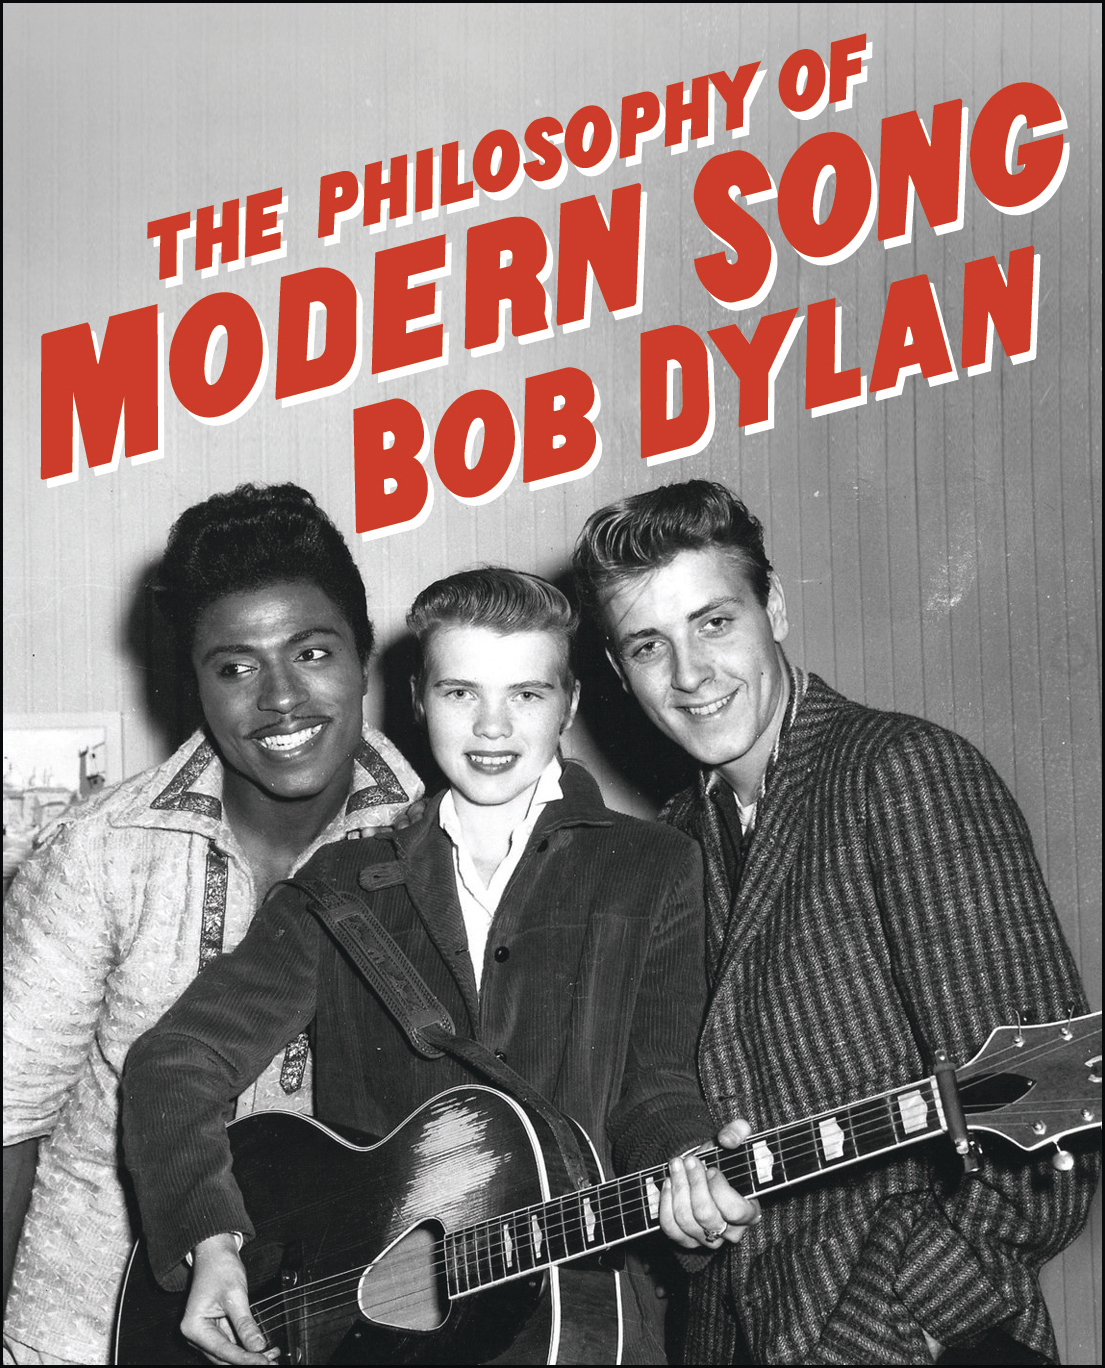 Portada de la edicin especial de "The Philosophy of Modern Song" de Bob Dylan, publicado por Simon & Schuster.